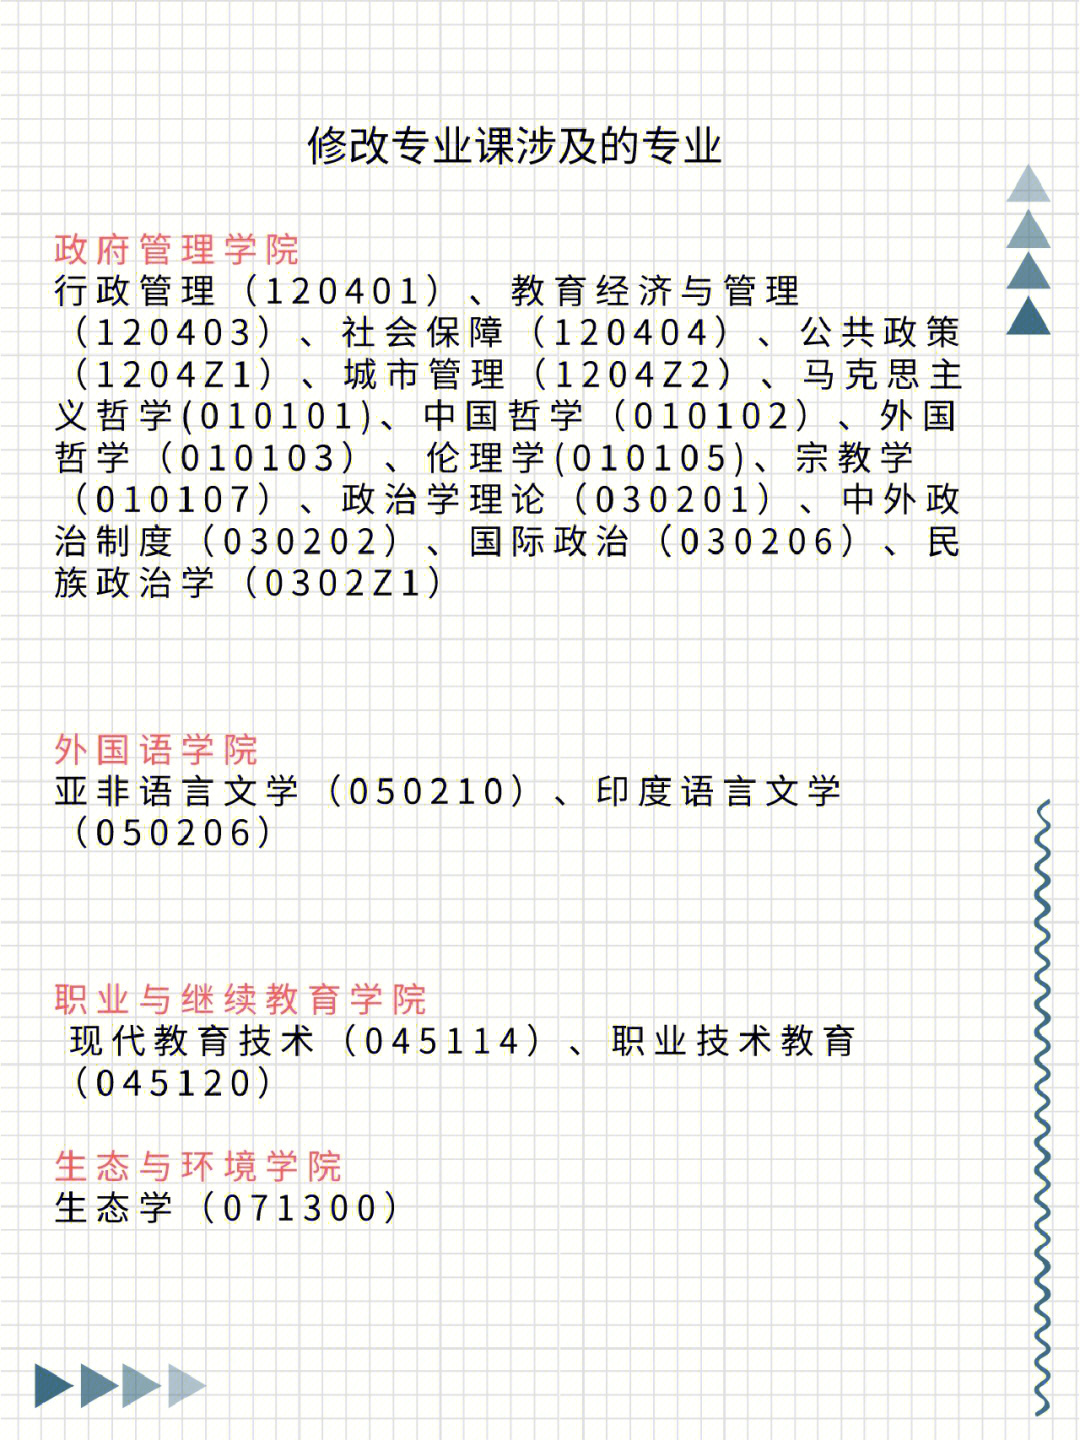 云南大学已经发布了23考研自命题考试大纲的修改通知啦~同学们千万不